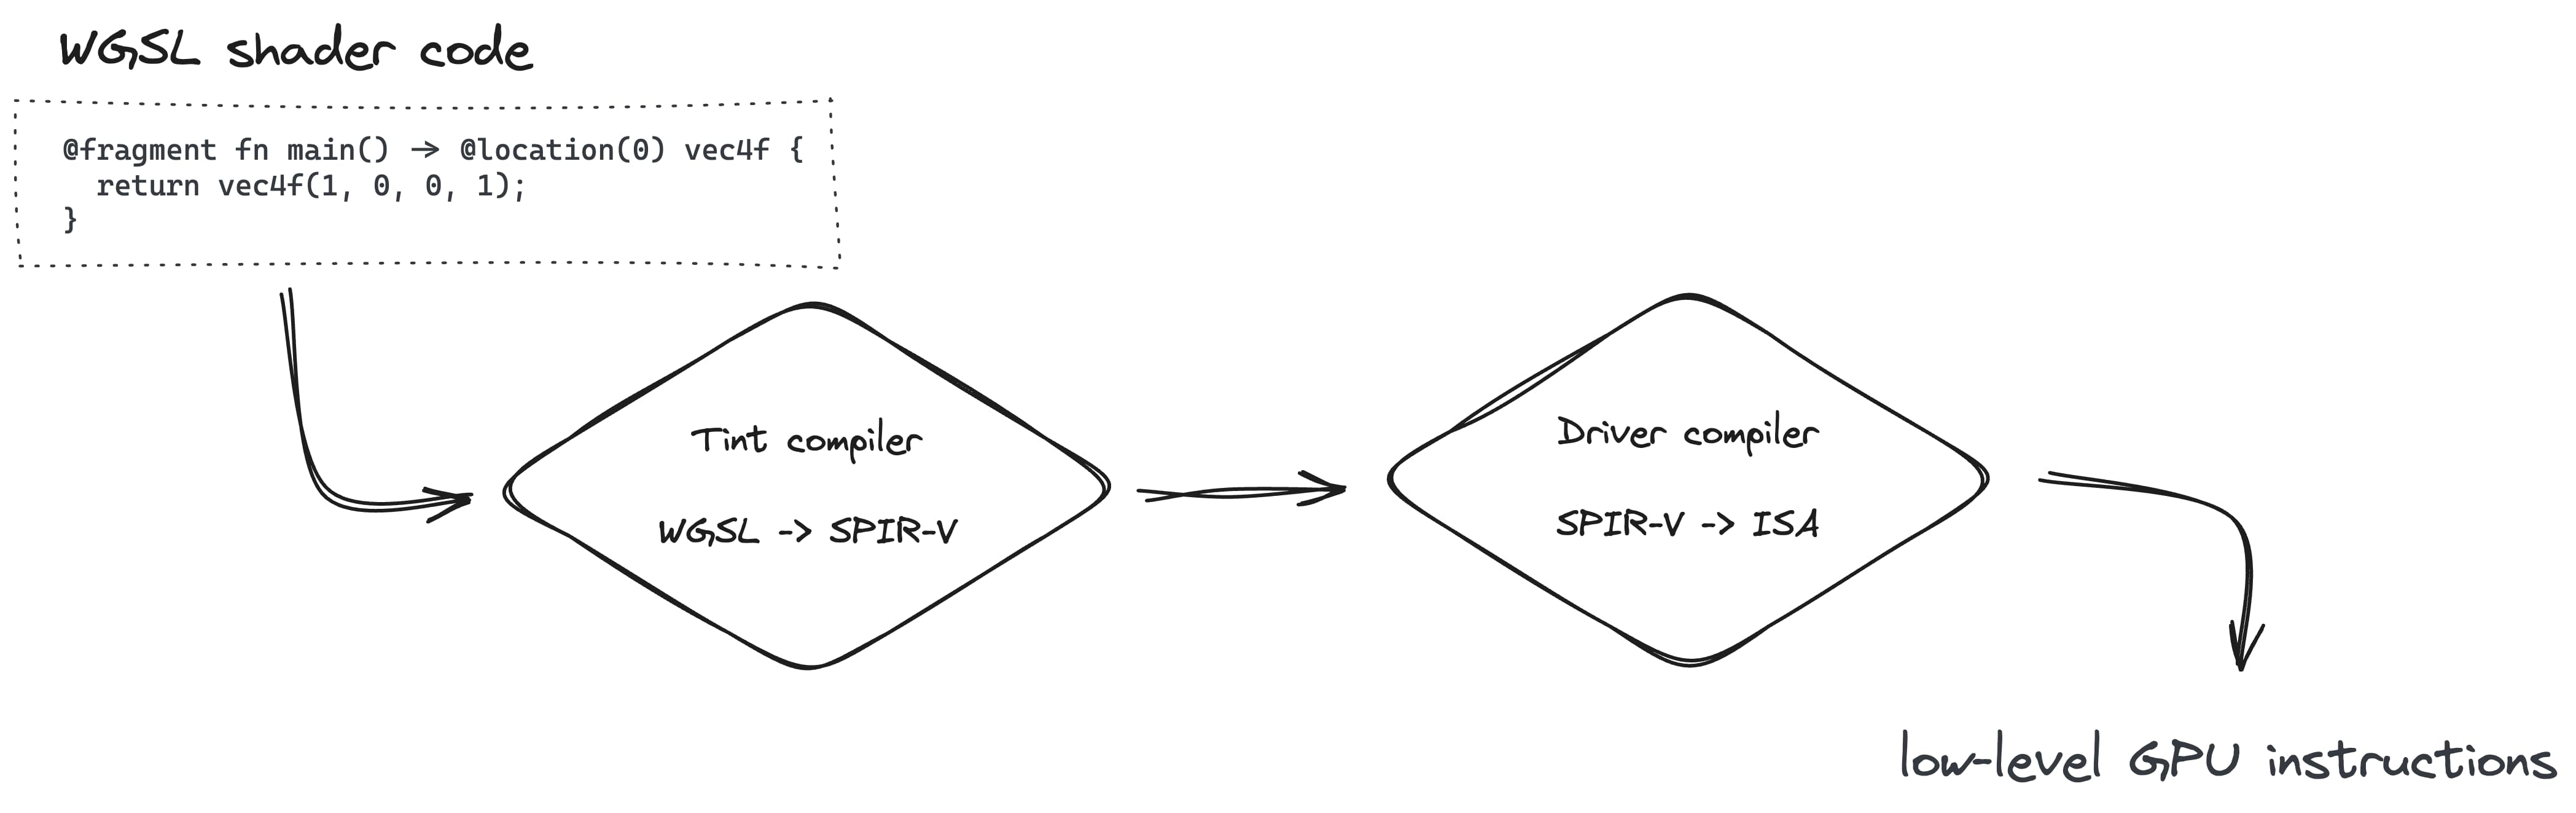 يتضمن إنشاء مسار العرض تحويل WGSL إلى SPIR-V باستخدام المحول البرمجي للتظليل، ثم إلى ISA باستخدام برنامج التحويل البرمجي لبرنامج التشغيل.